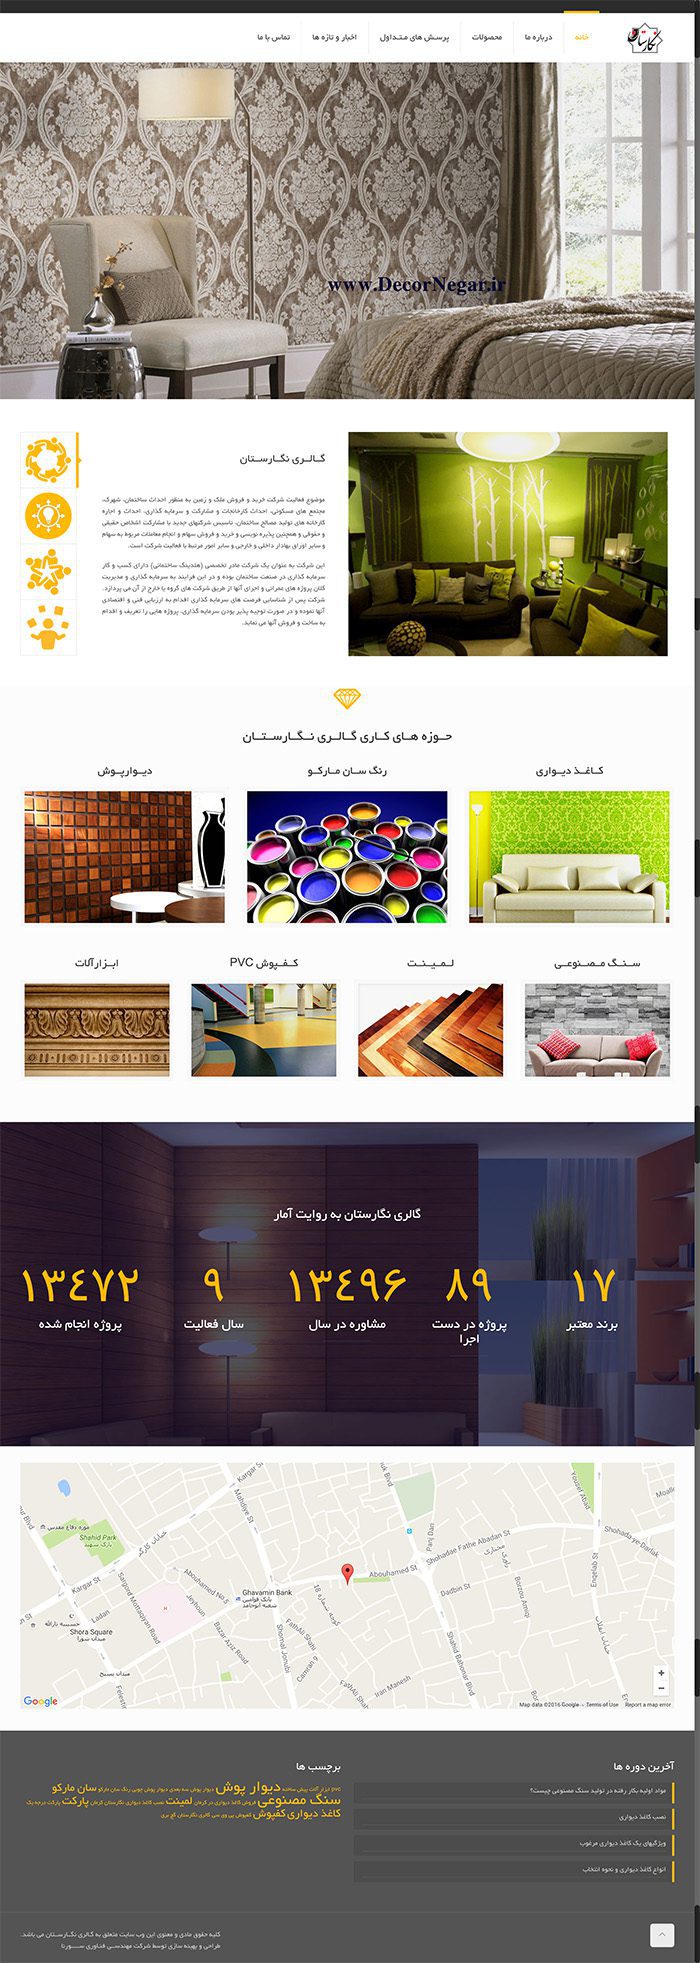 طراحی سایت گالری نگارستان توسط شرکت طراحی سایت سورنا در کرمان